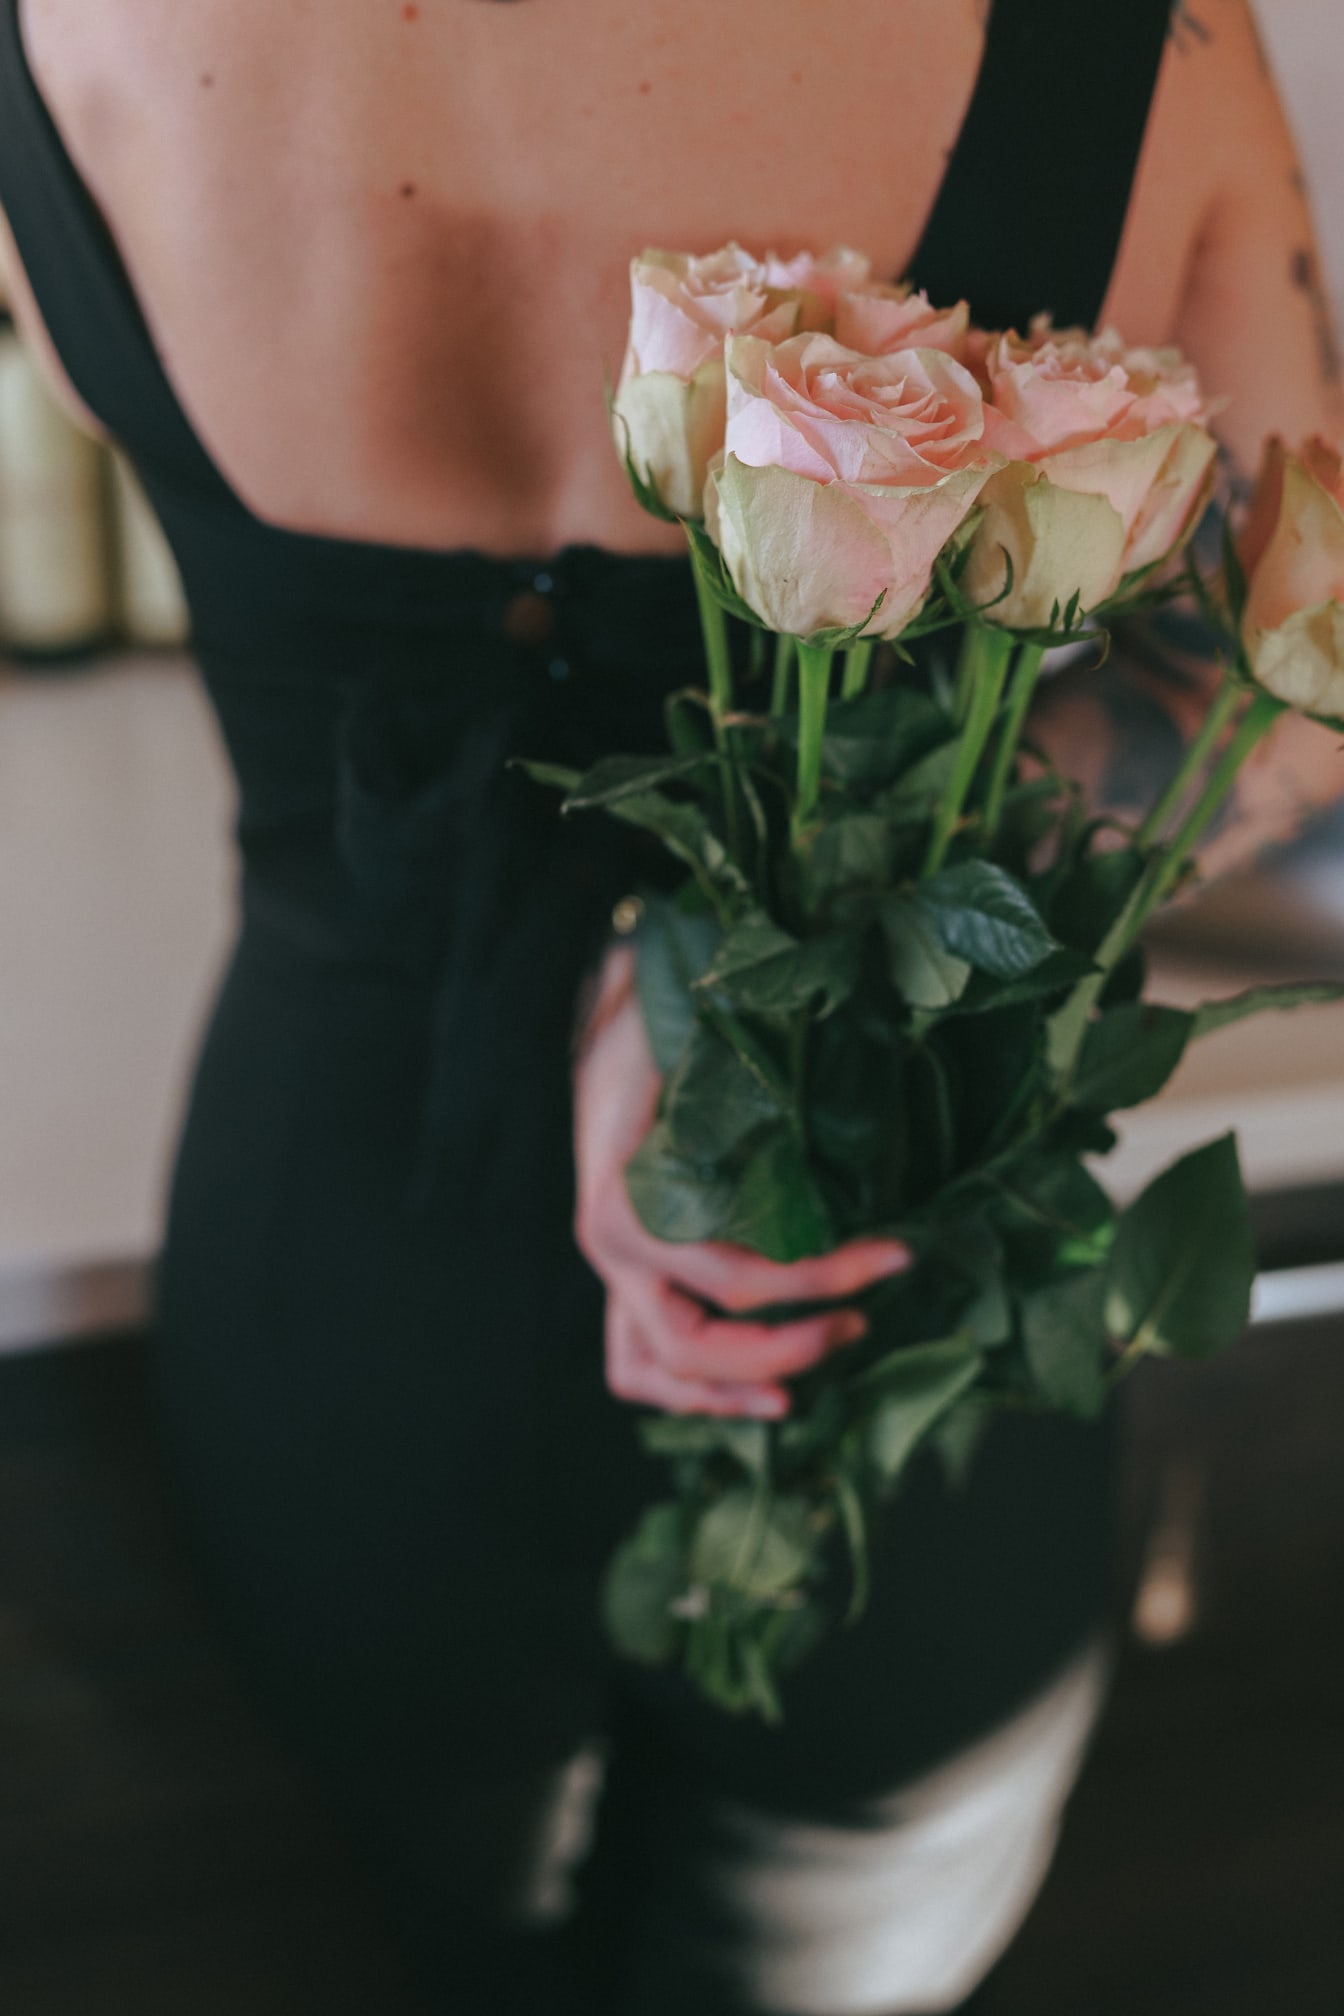 Žena držící na zádech kytici narůžovělých růží